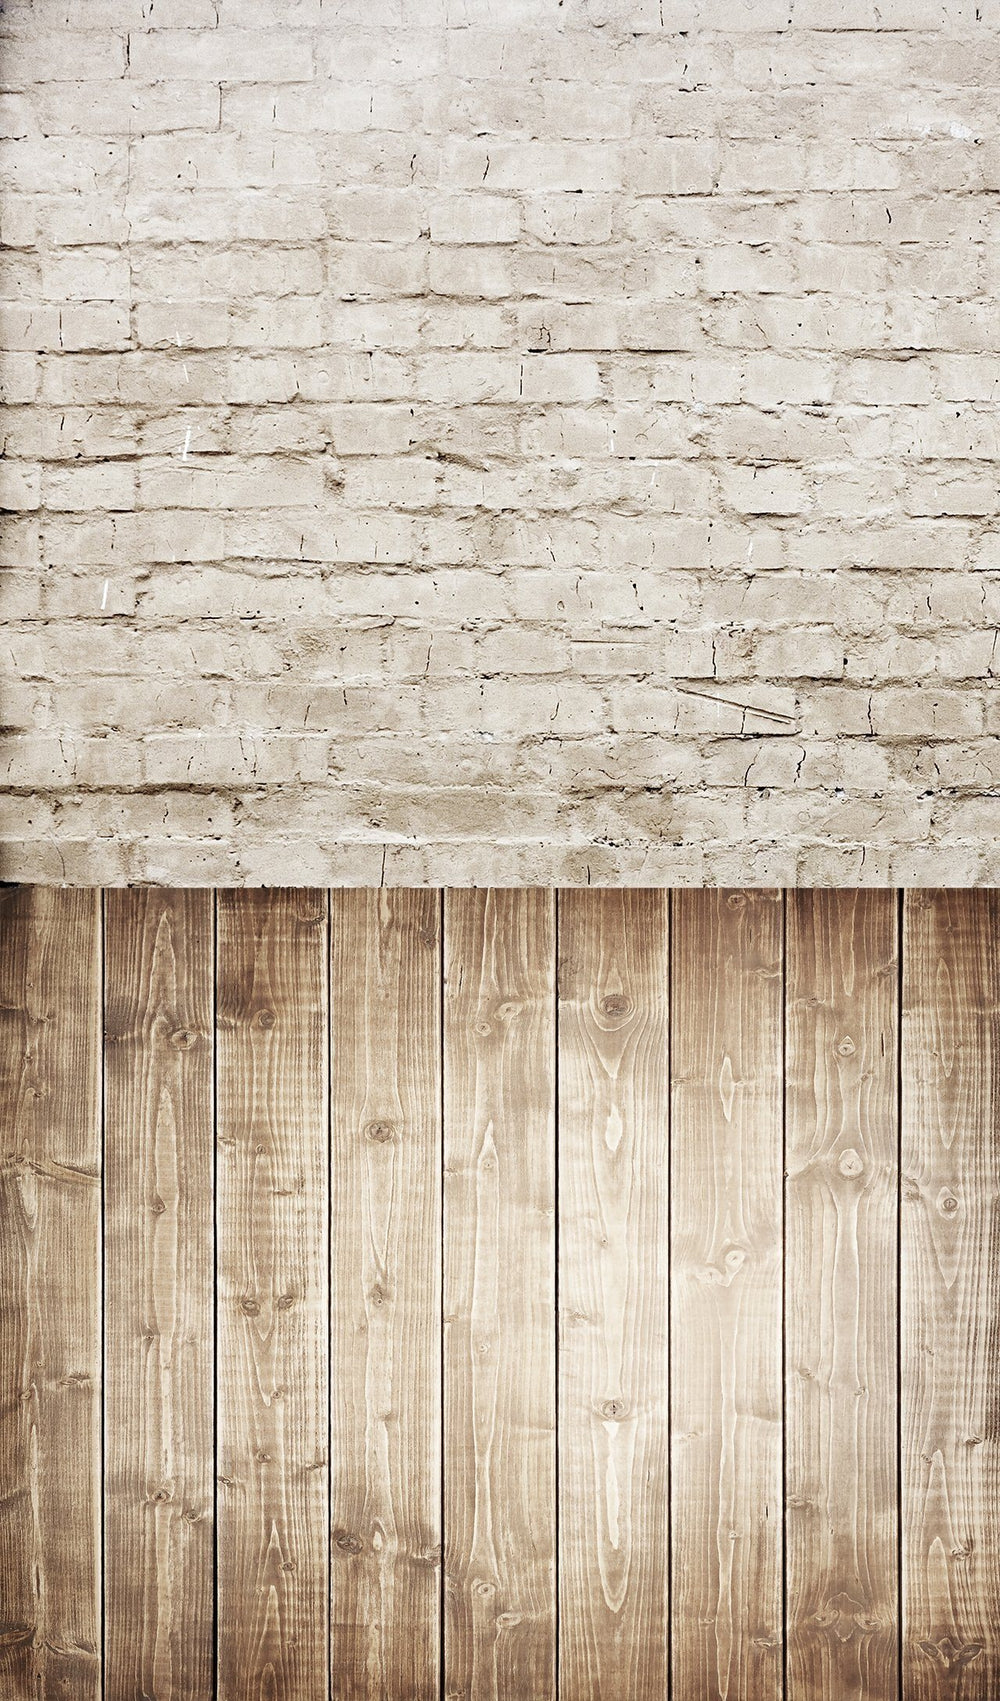 Wooden Floor & Sandy Brick Wall